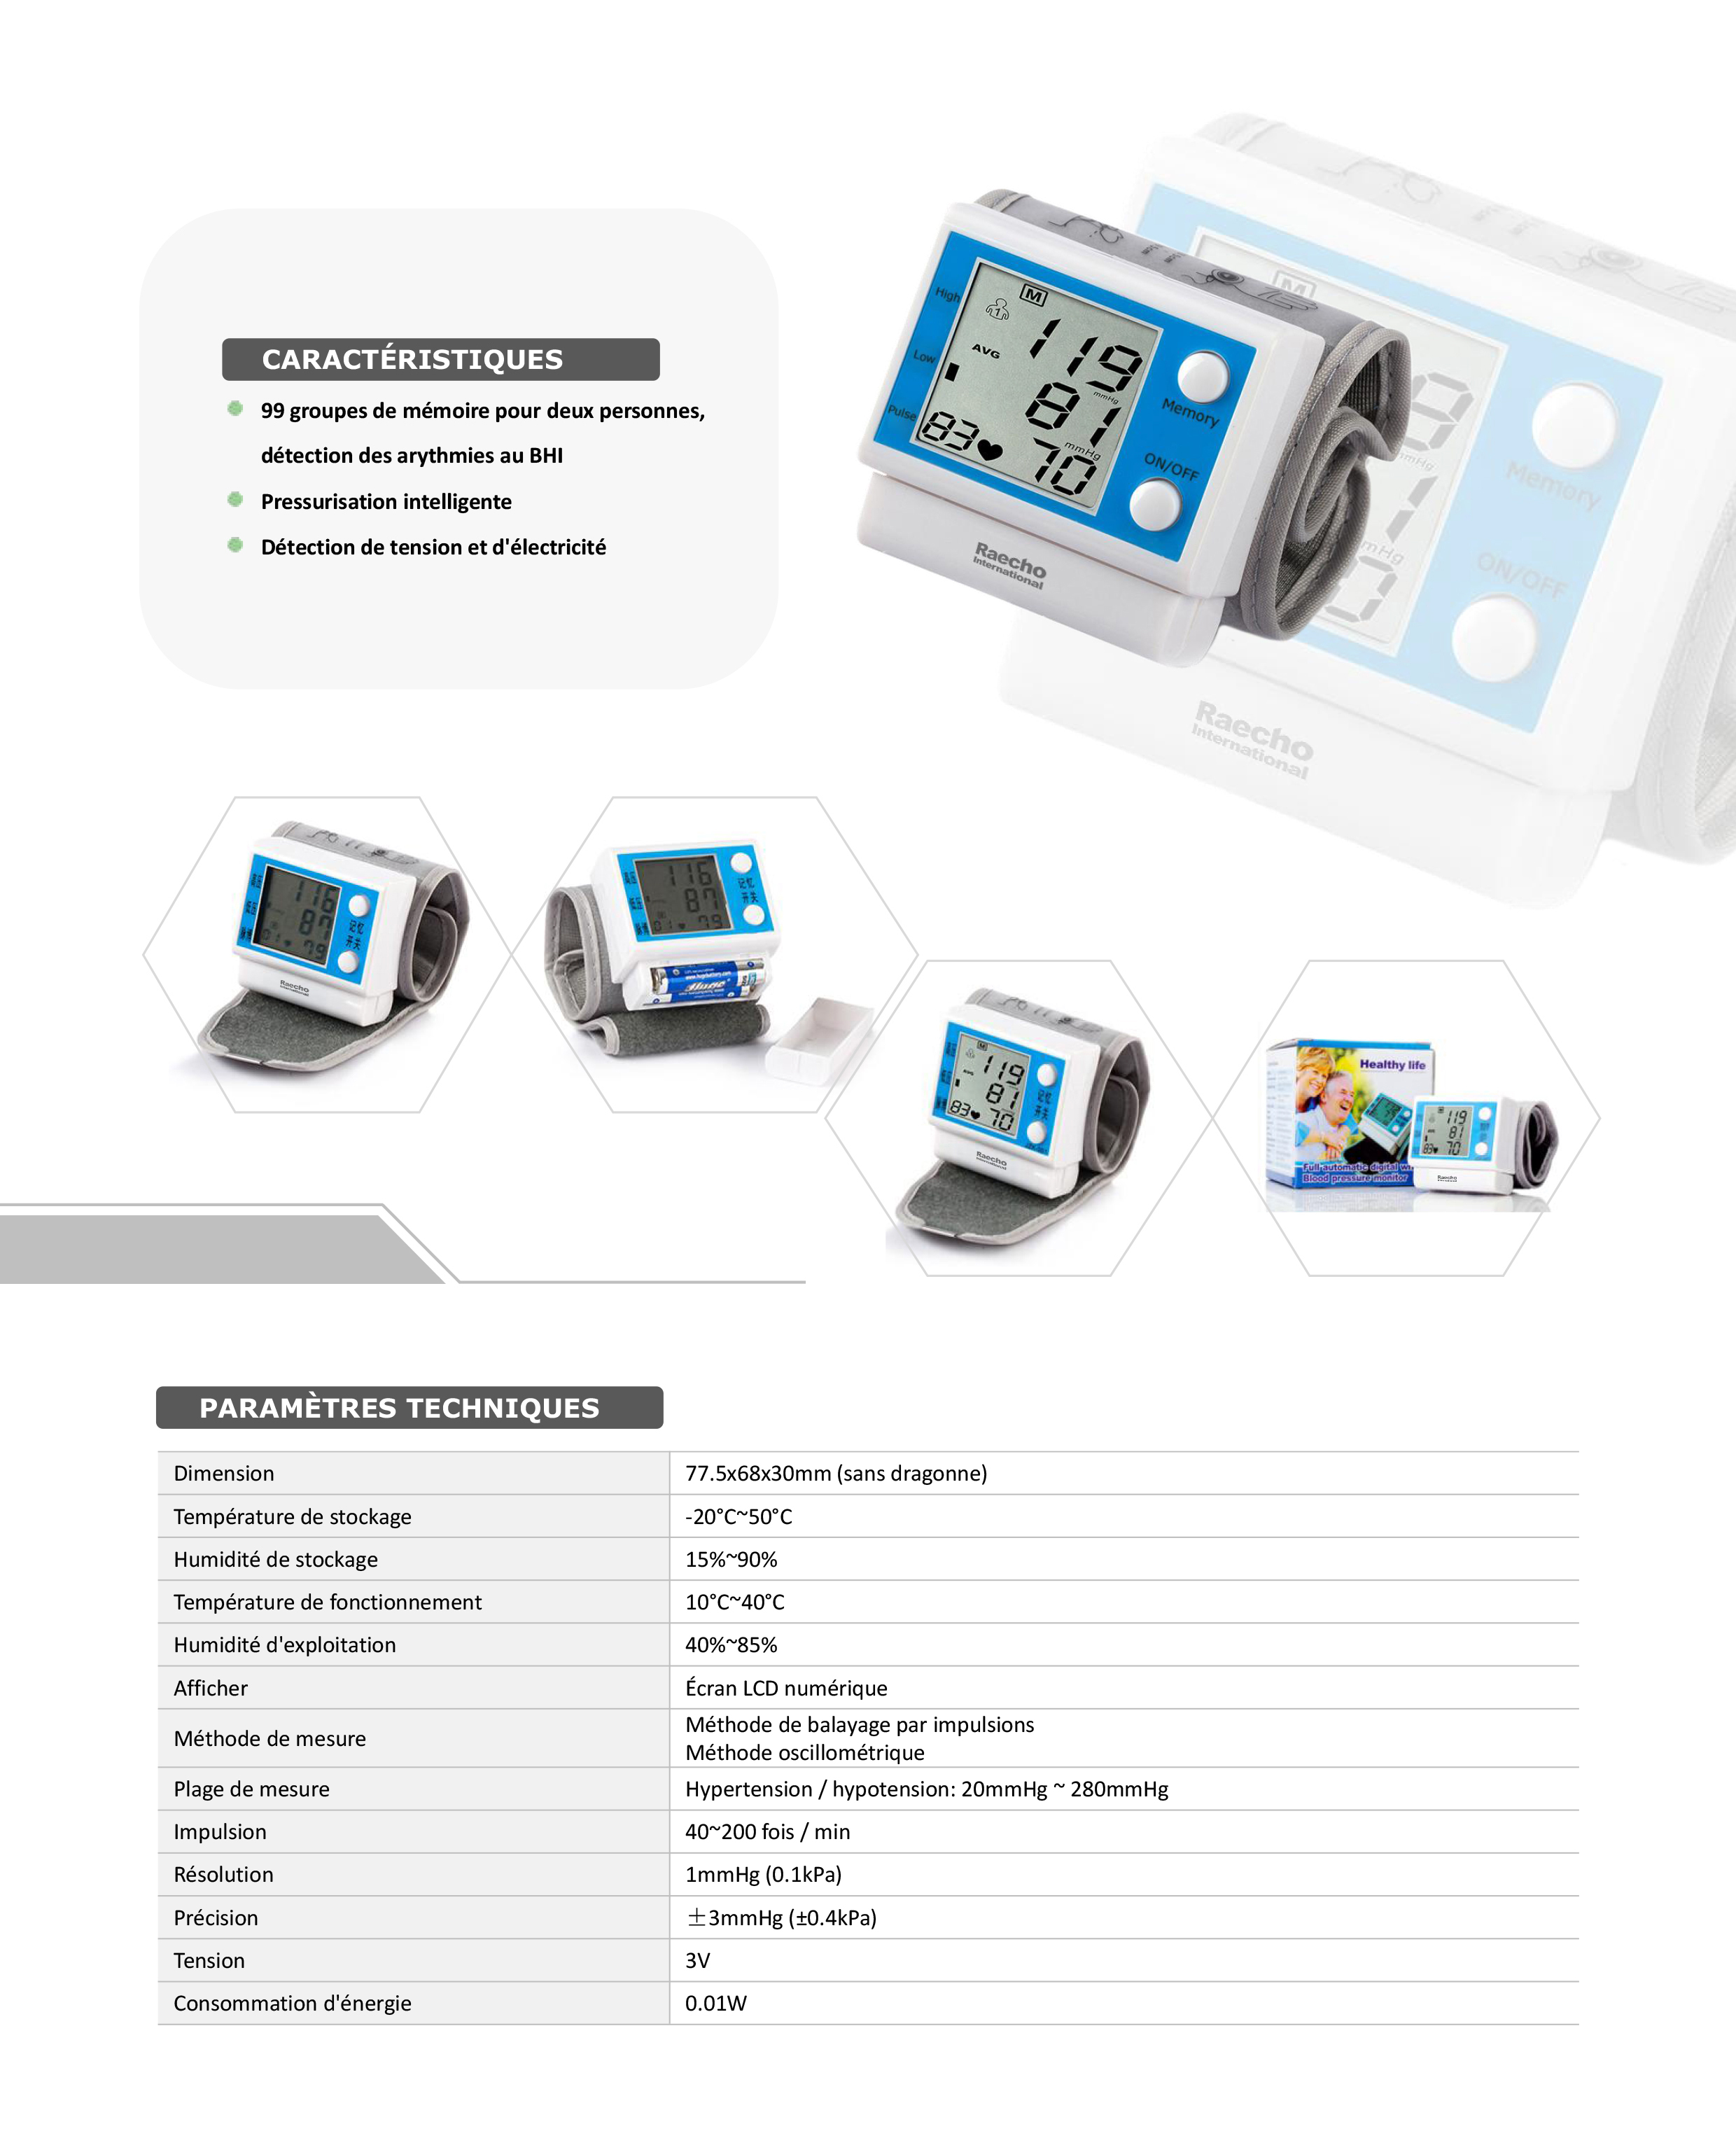 Raecho-Wrist Type Digital Blood Pressure Monitor-1.jpg